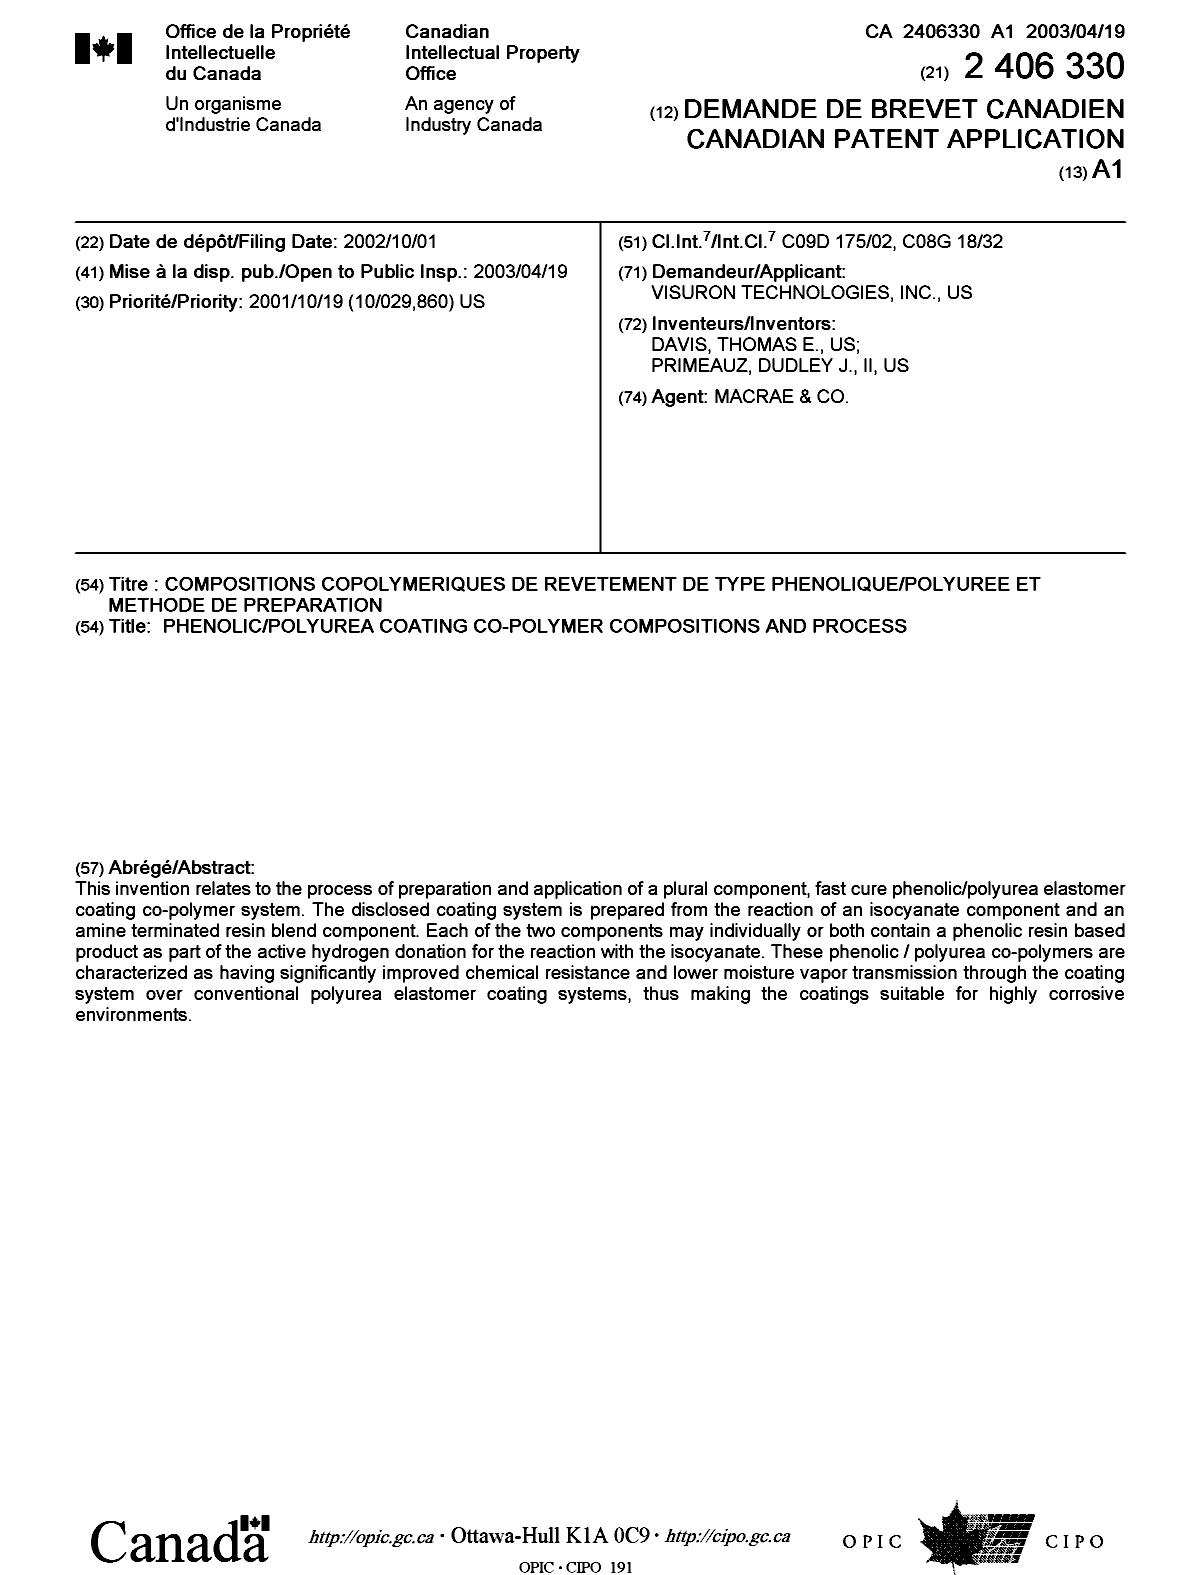 Document de brevet canadien 2406330. Page couverture 20030328. Image 1 de 1